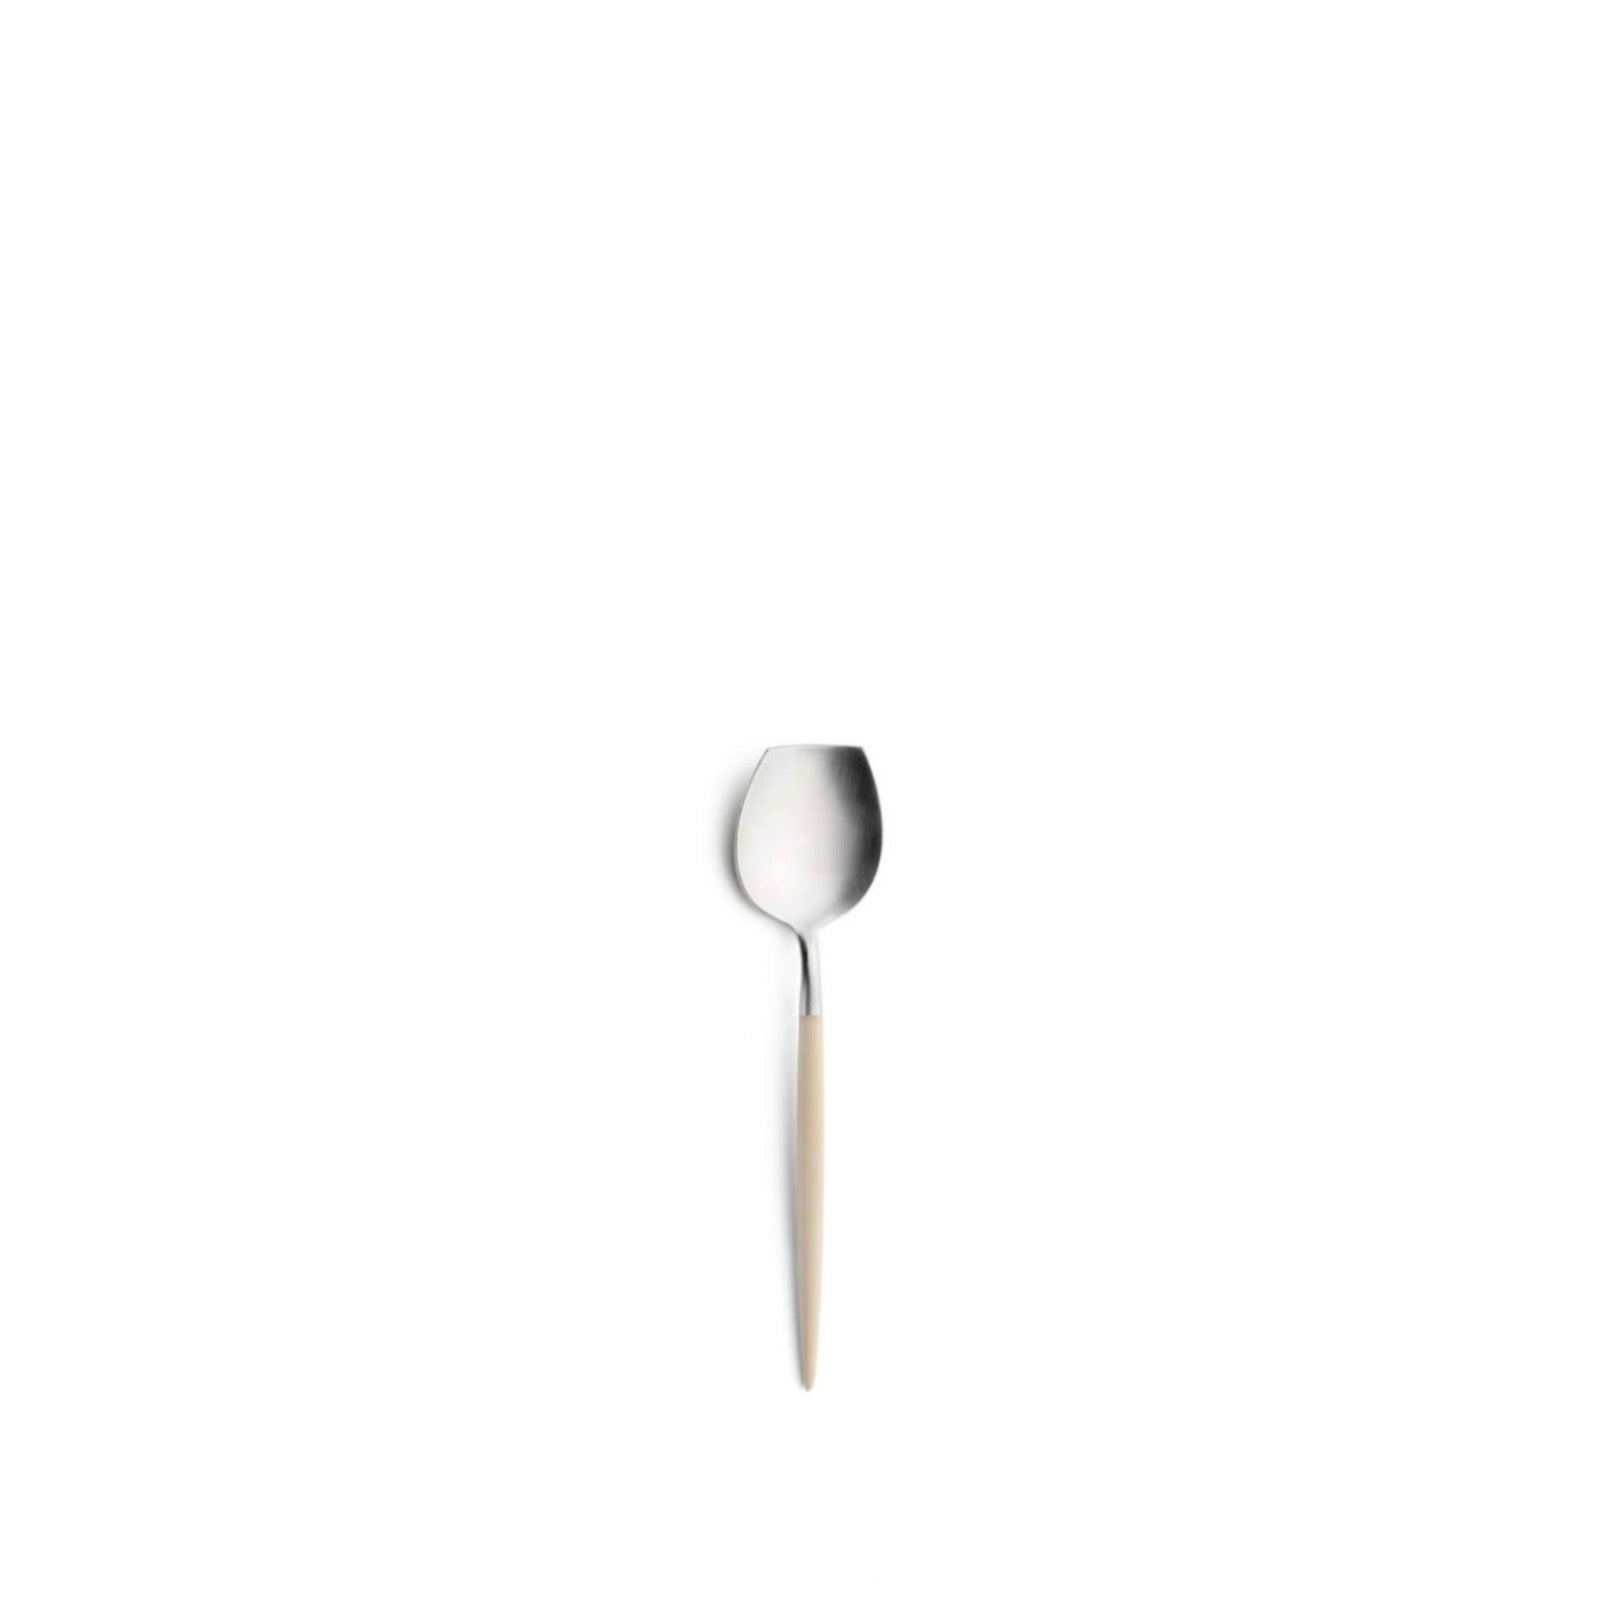 Goa Sugar Spoon by Cutipol